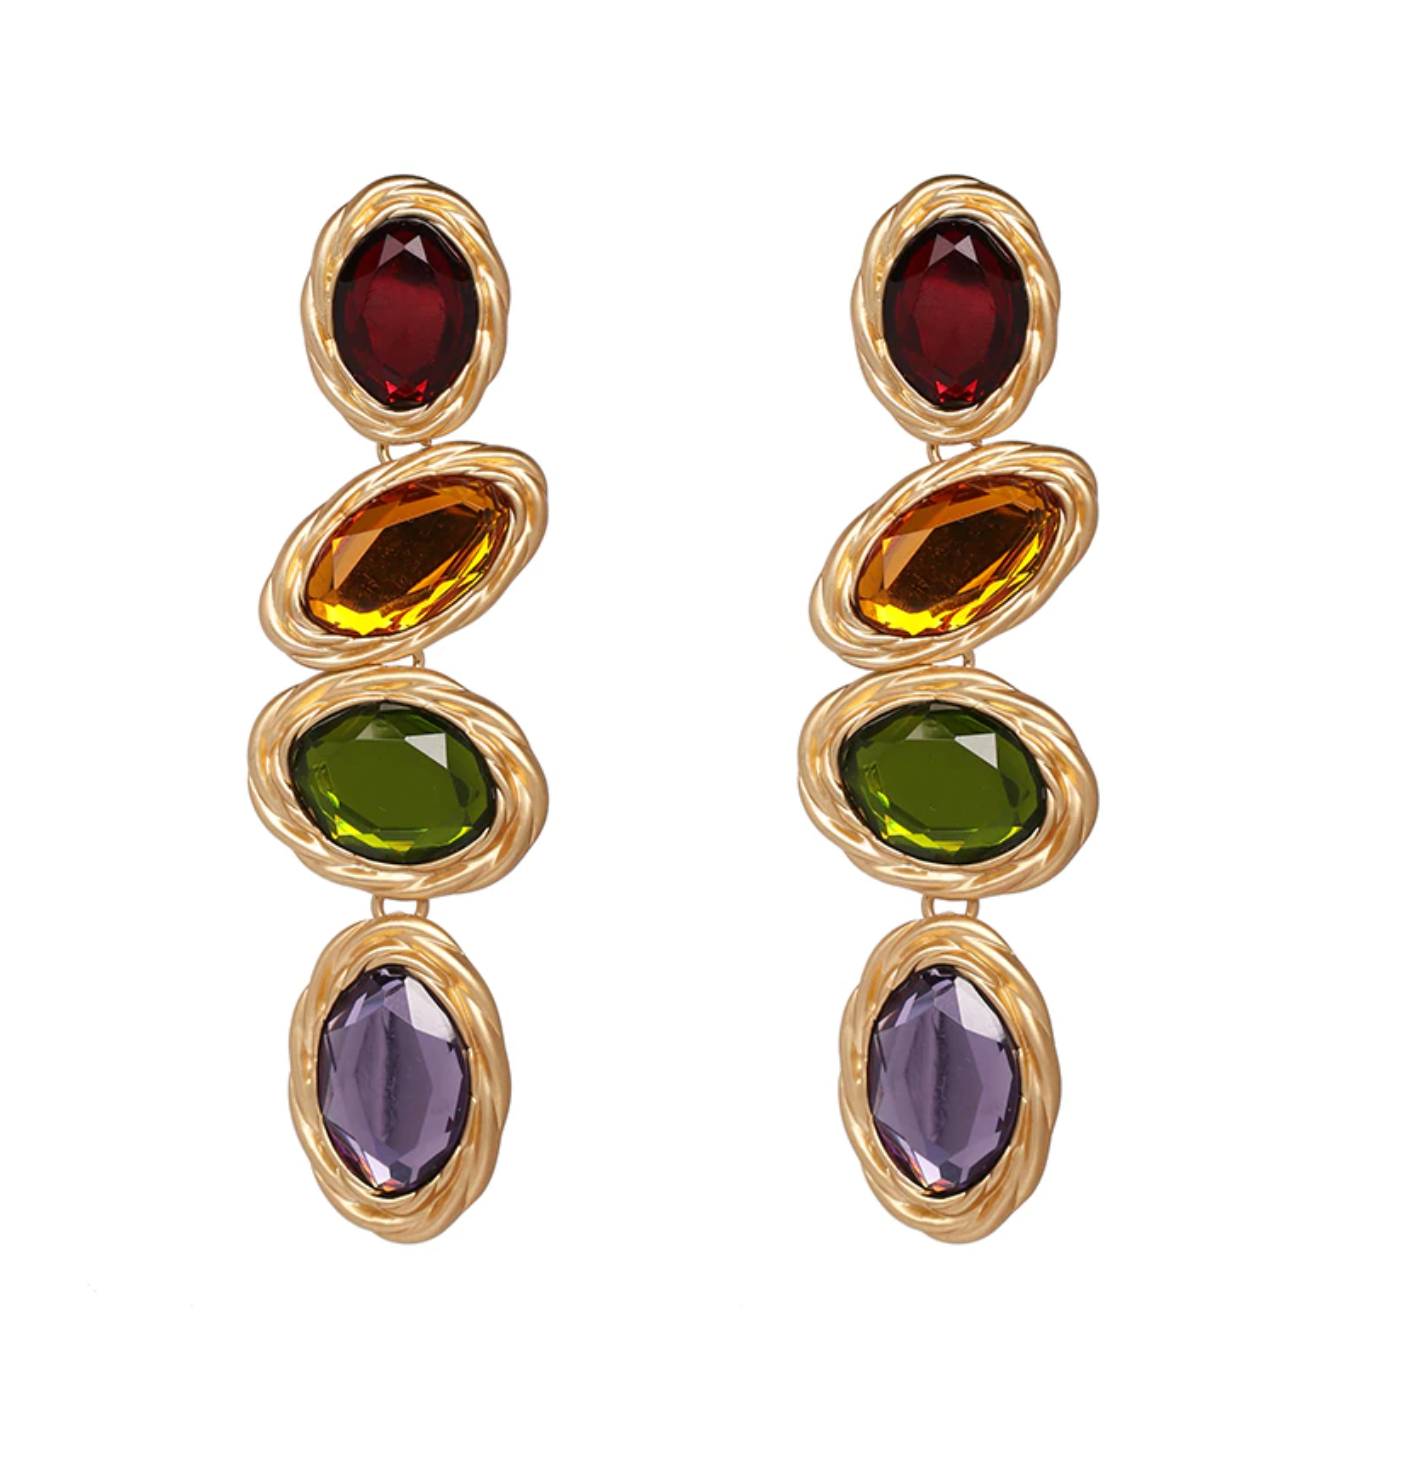 Goldtone fourstone framed drop earrings in multi